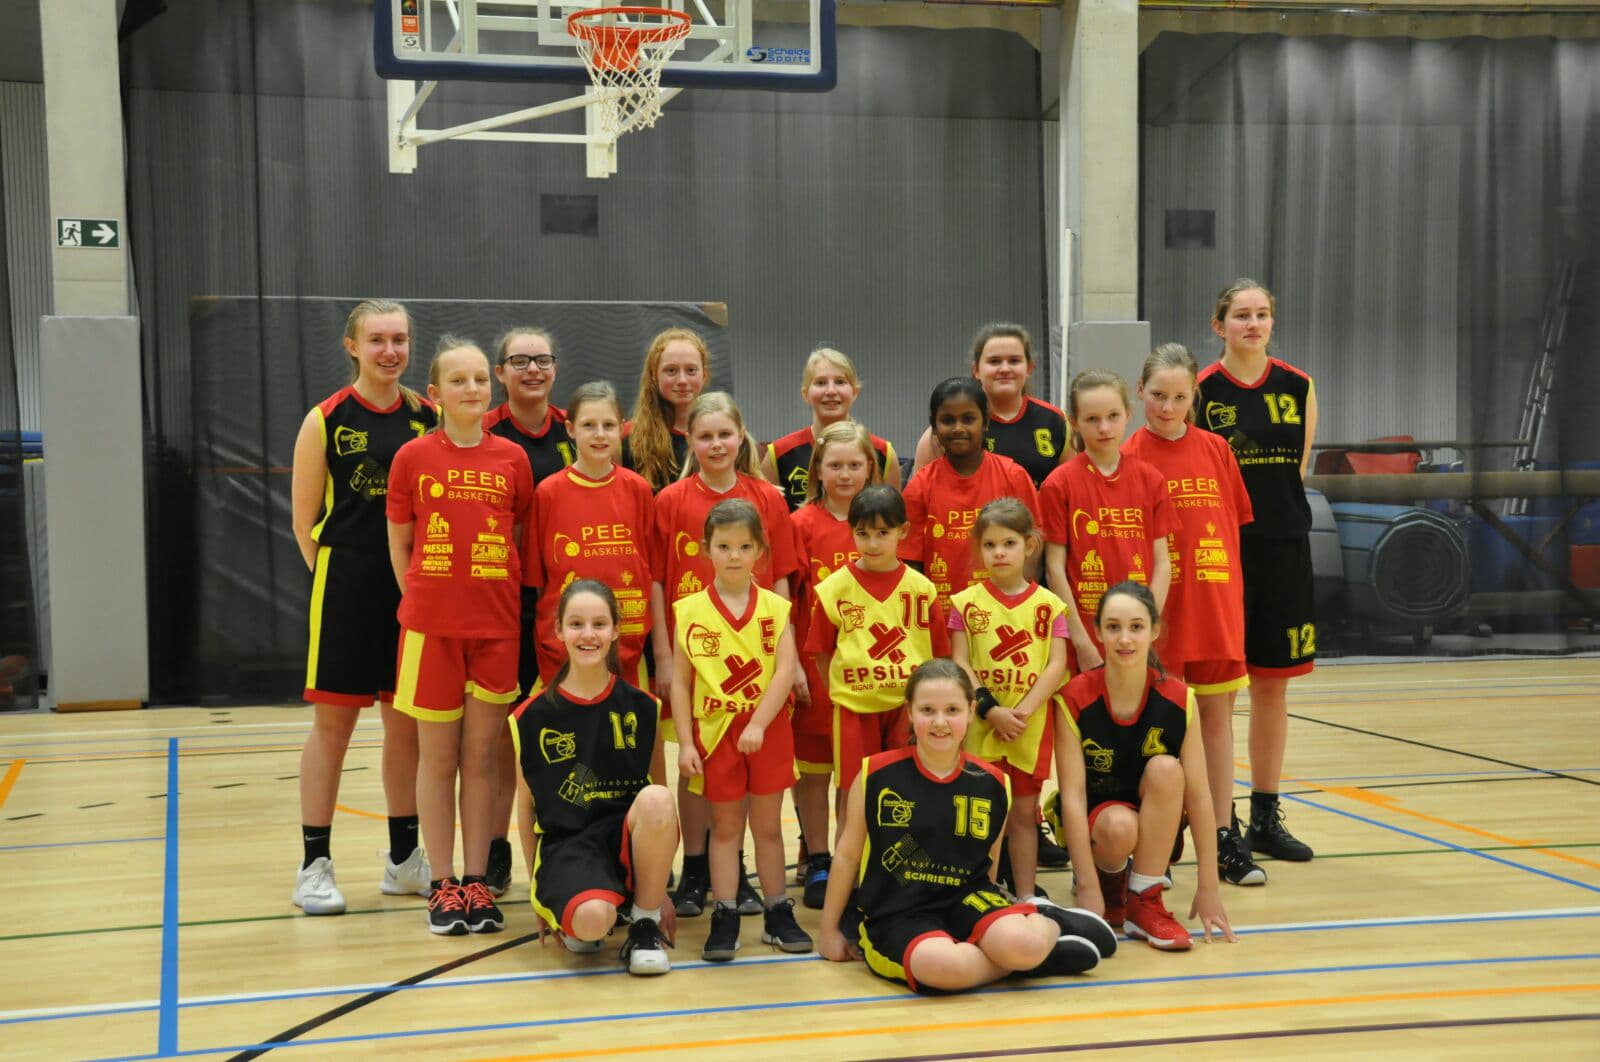 Meisjes Basket willen meisjes laten basketten met promofilmpje (Peer) | Het Belang van Limburg Mobile